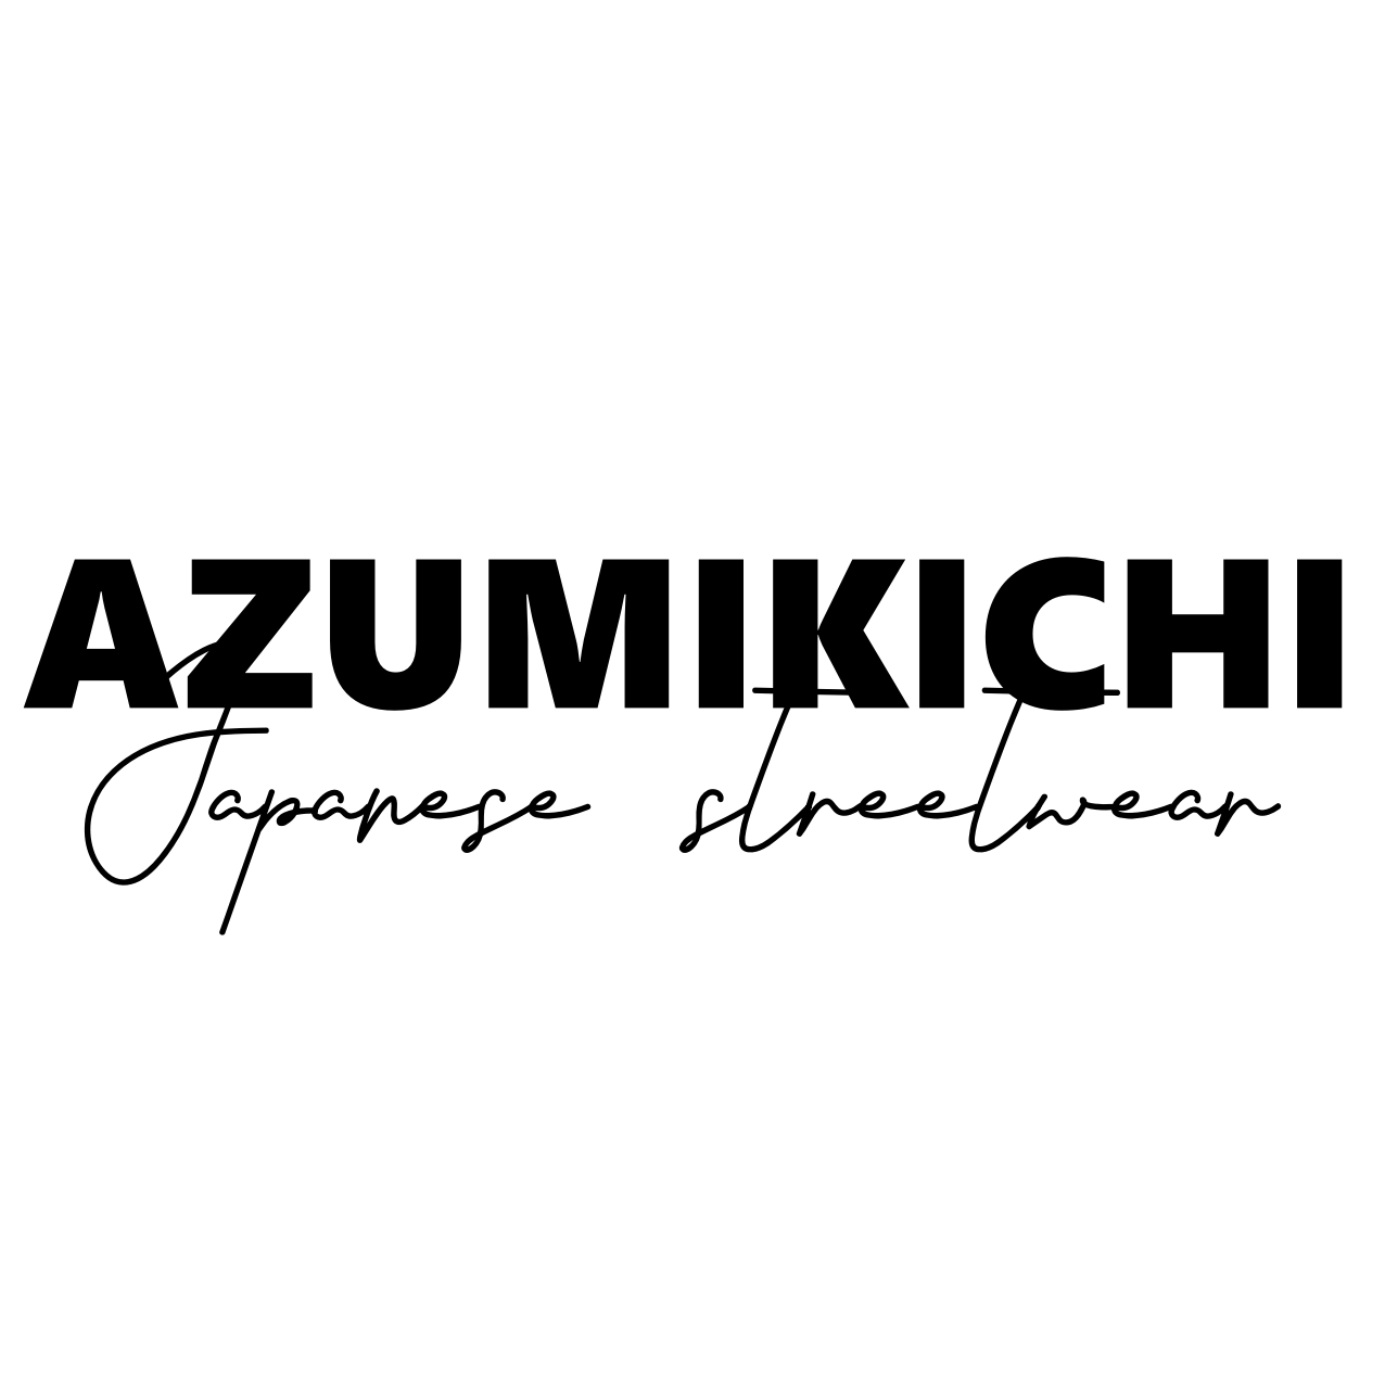 Azumikichi